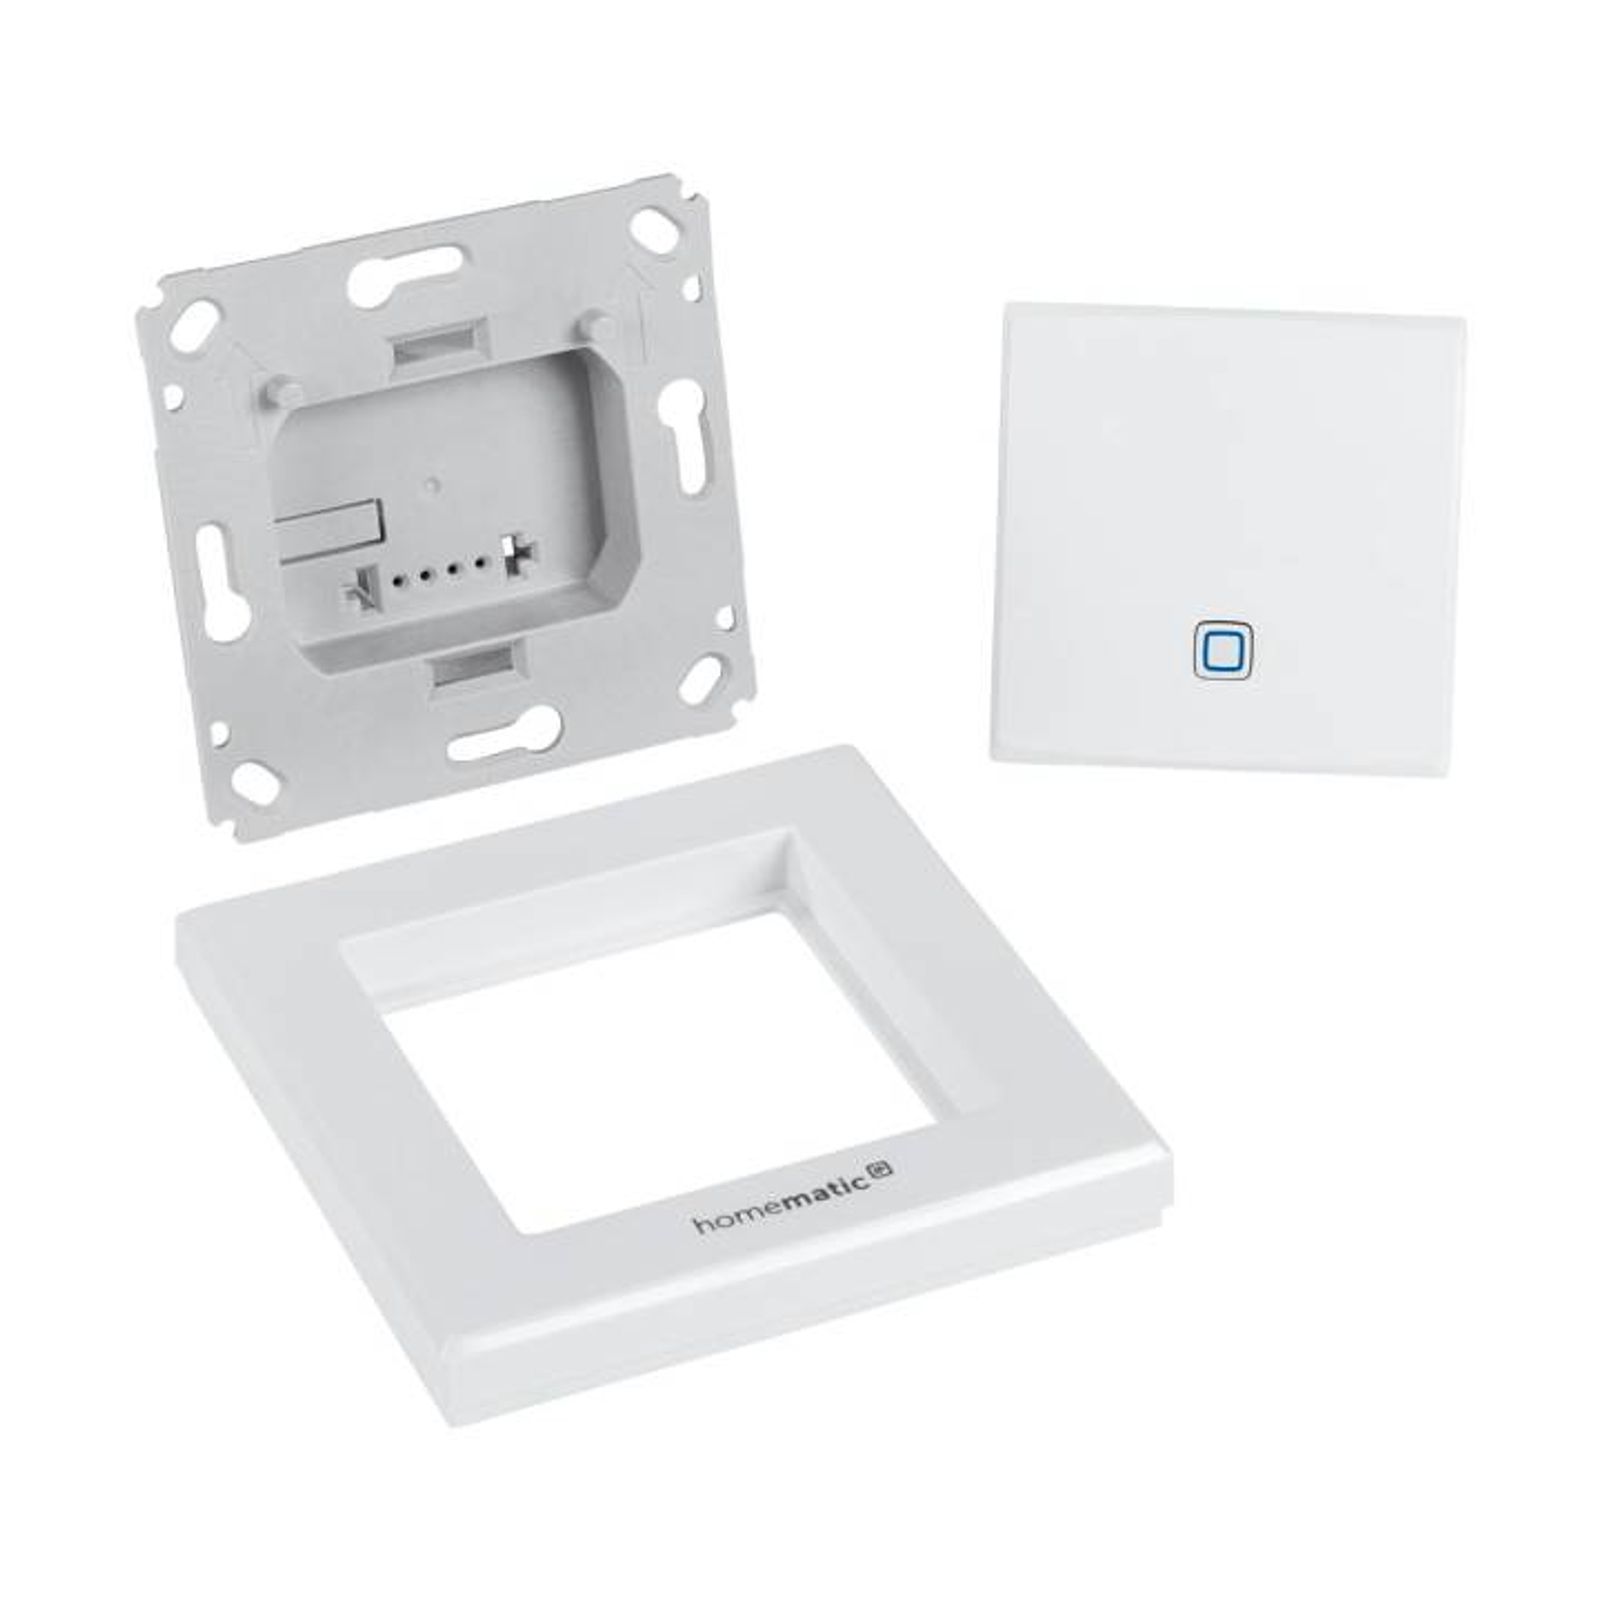 Homematic IP Wired Smart Home Temperatur- und Luftfeuchtigkeitssensor HmIPW-STH - innen